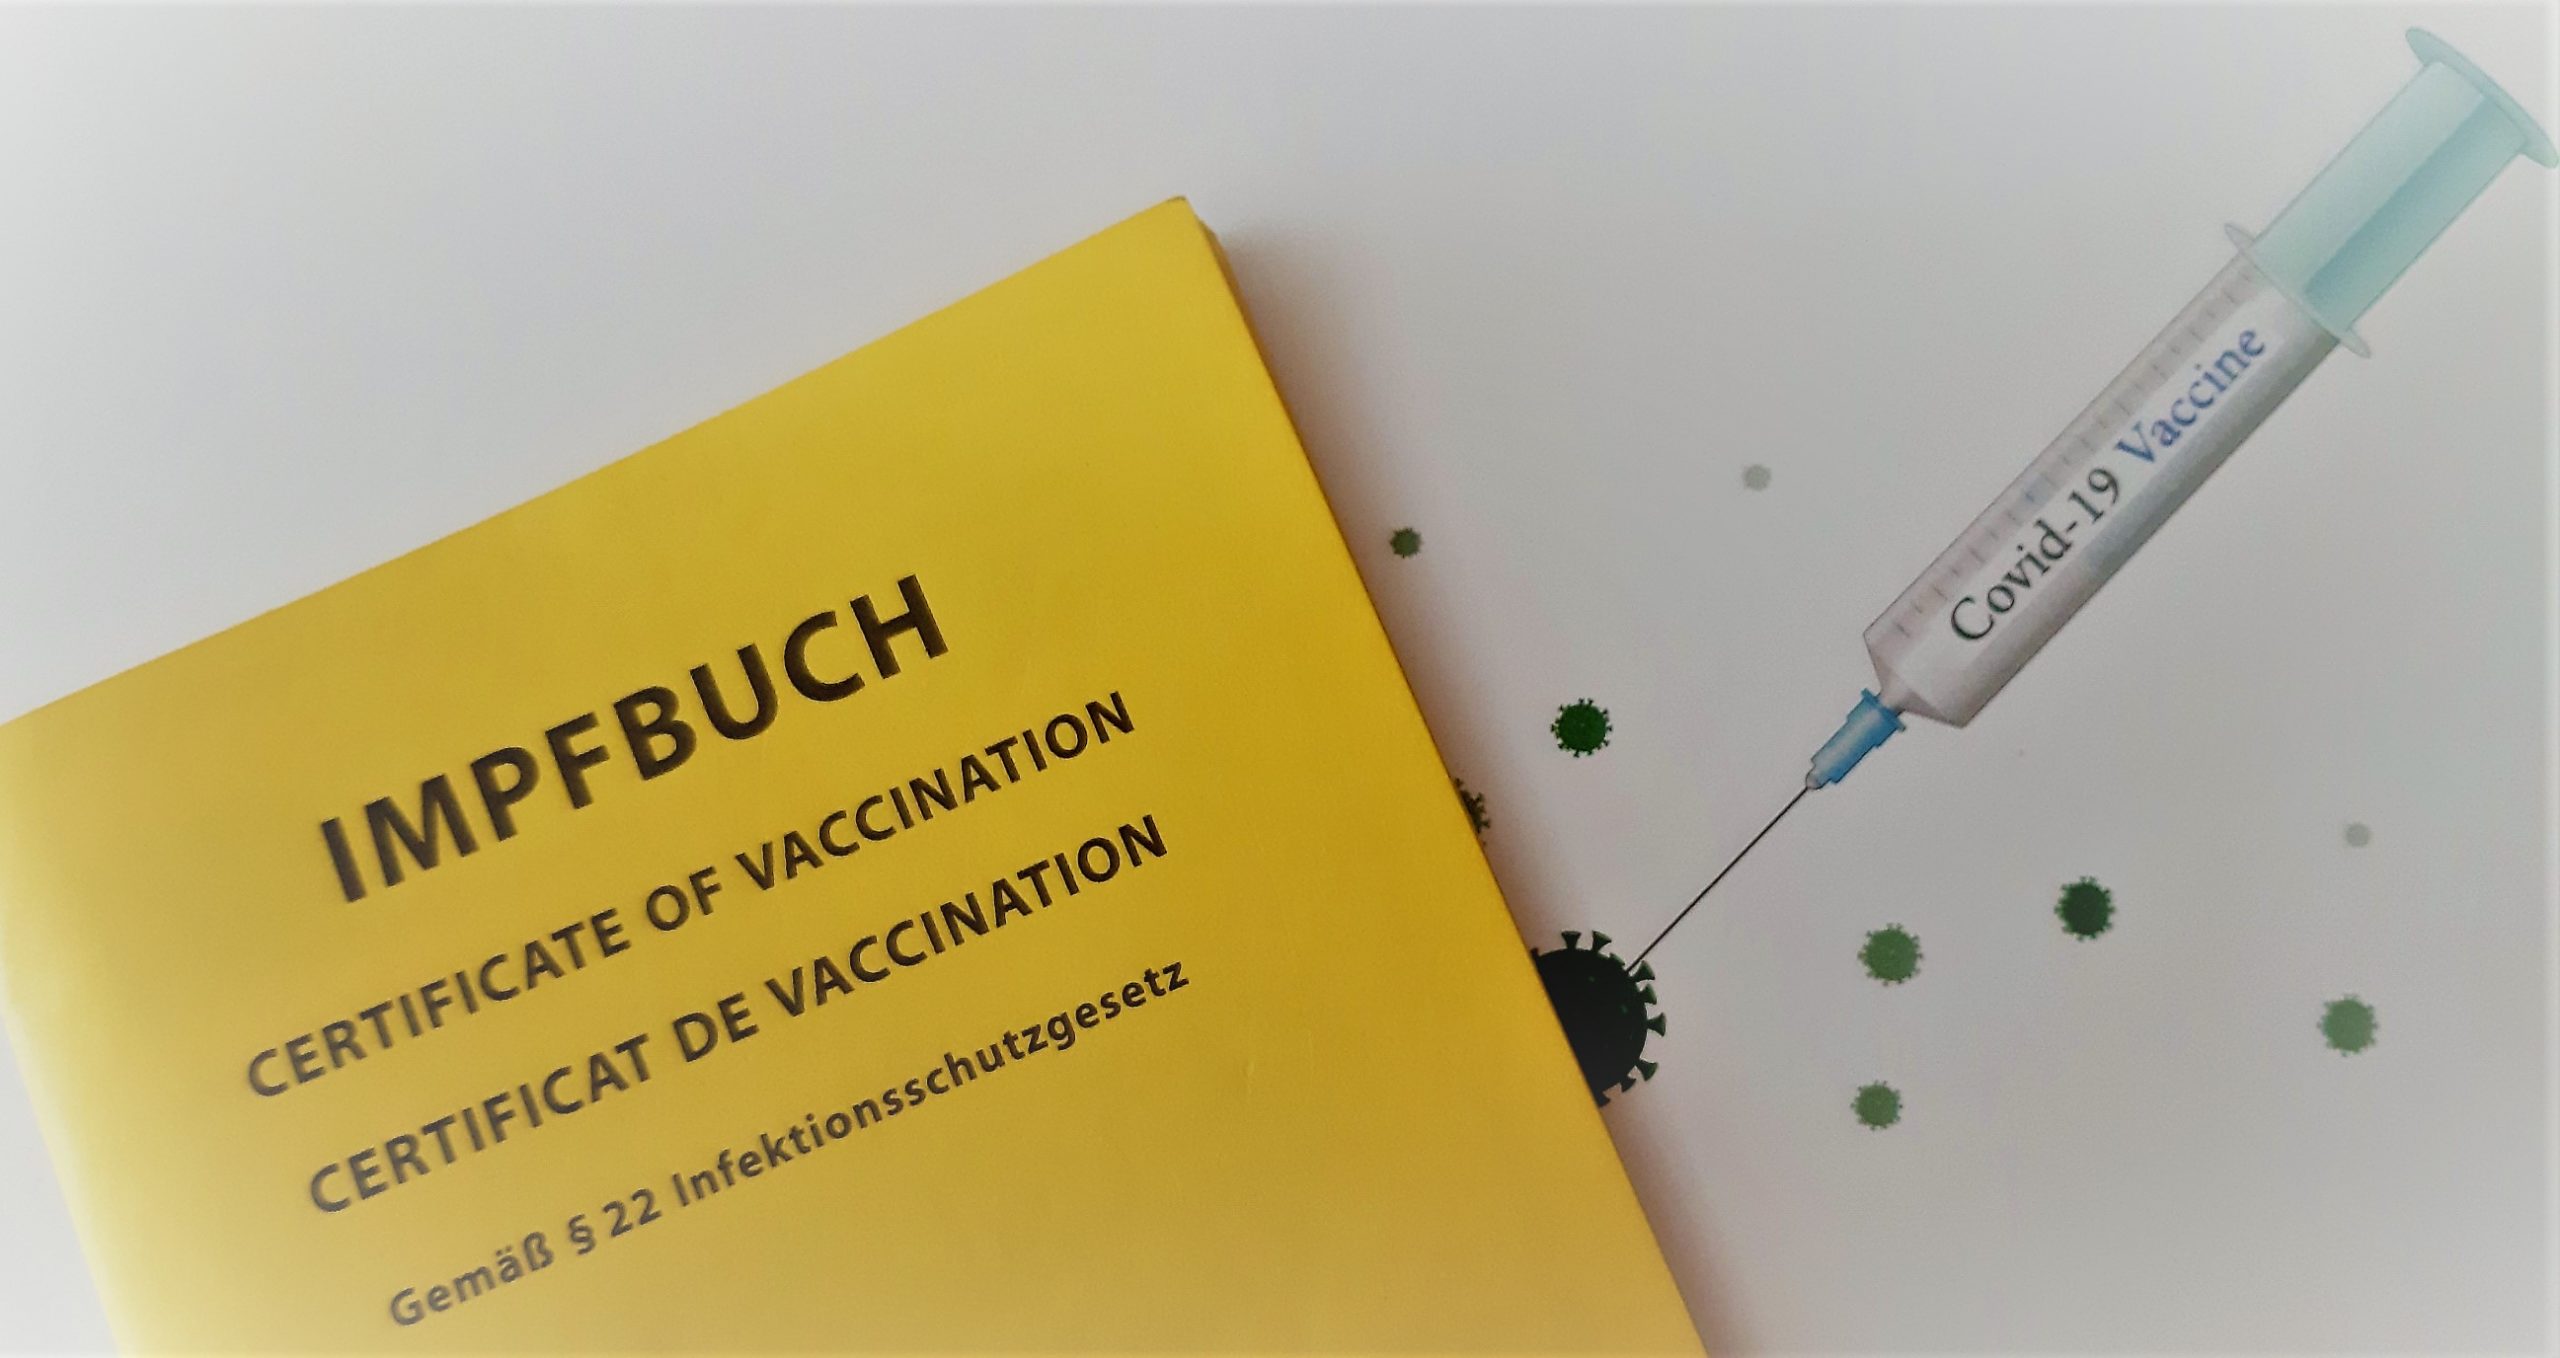 7100 Info-Briefe an Ü70er: Stadt Bergkamen appelliert für die Booster-Impfung